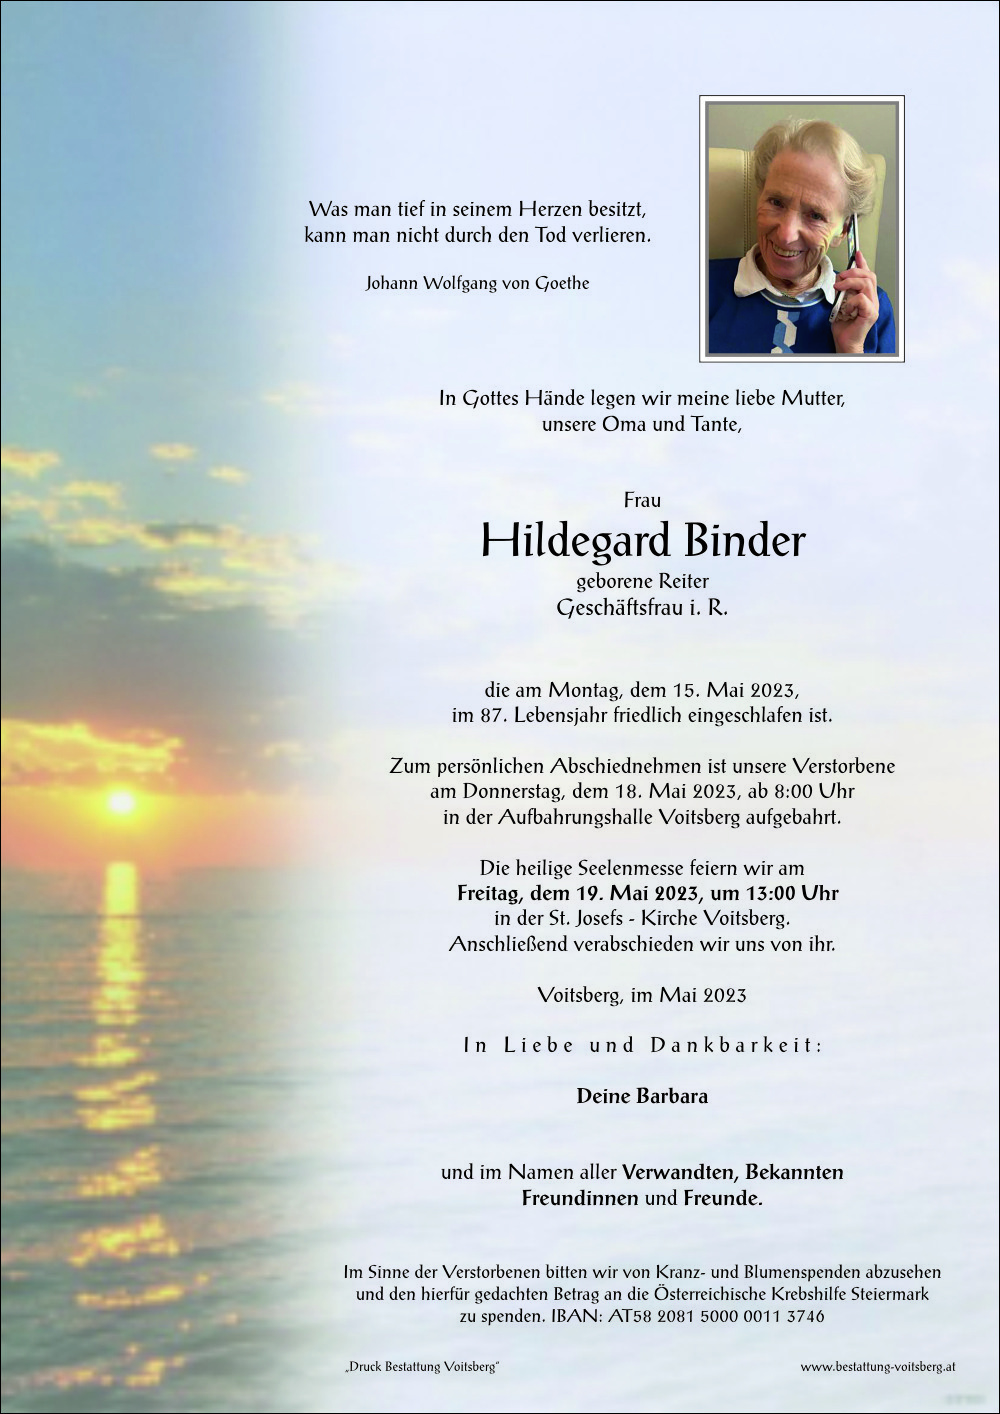 Hildegard Binder